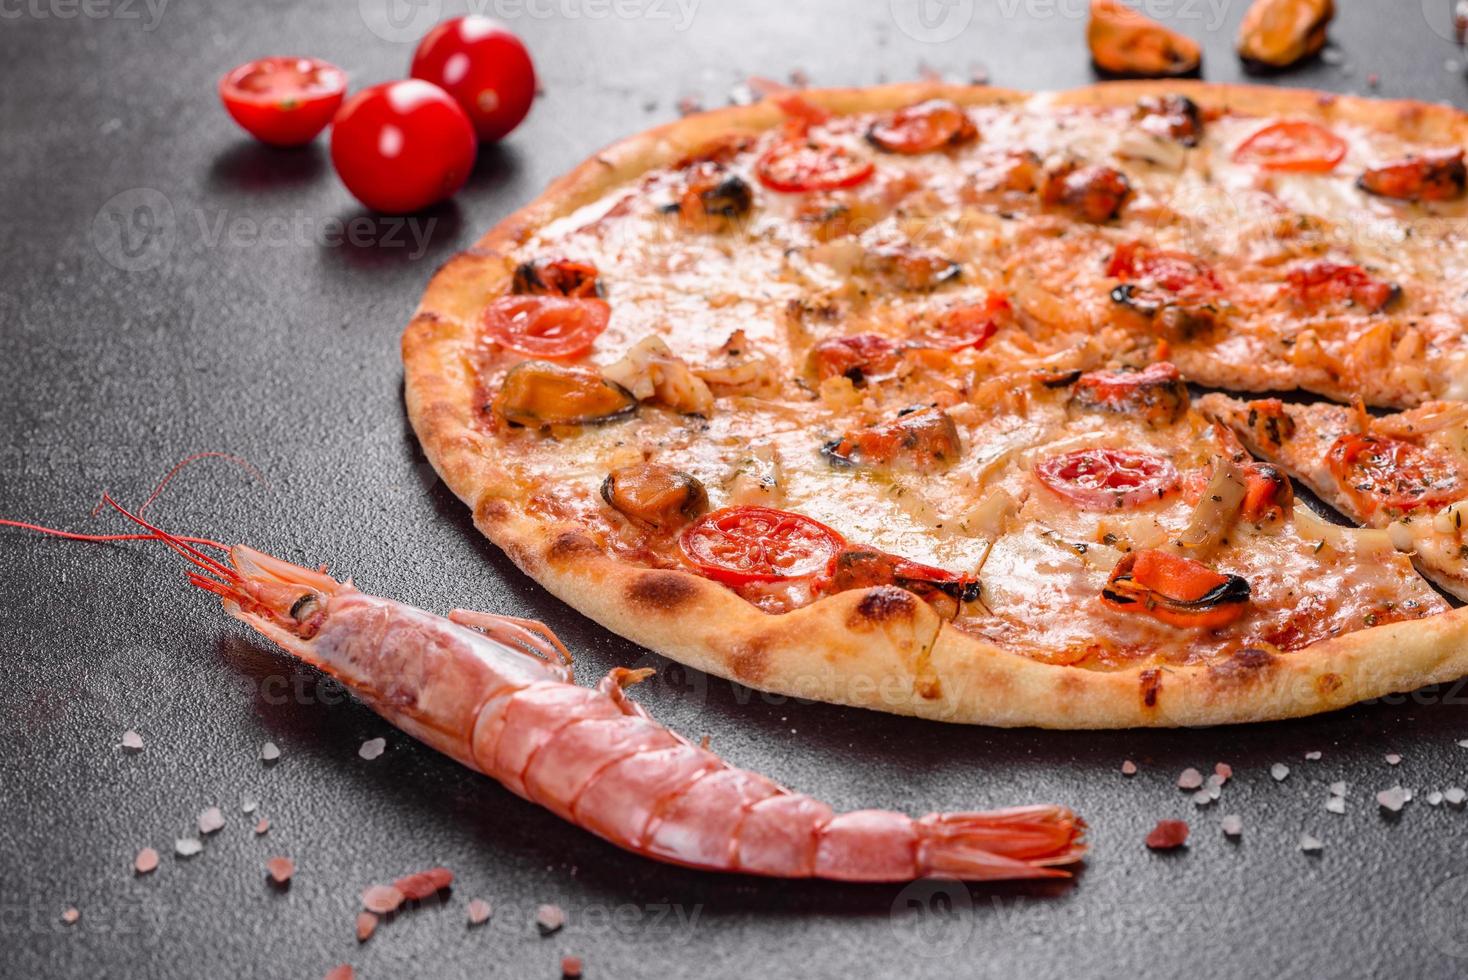 välsmakande skivad pizza med skaldjur och tomat på en betongbakgrund foto